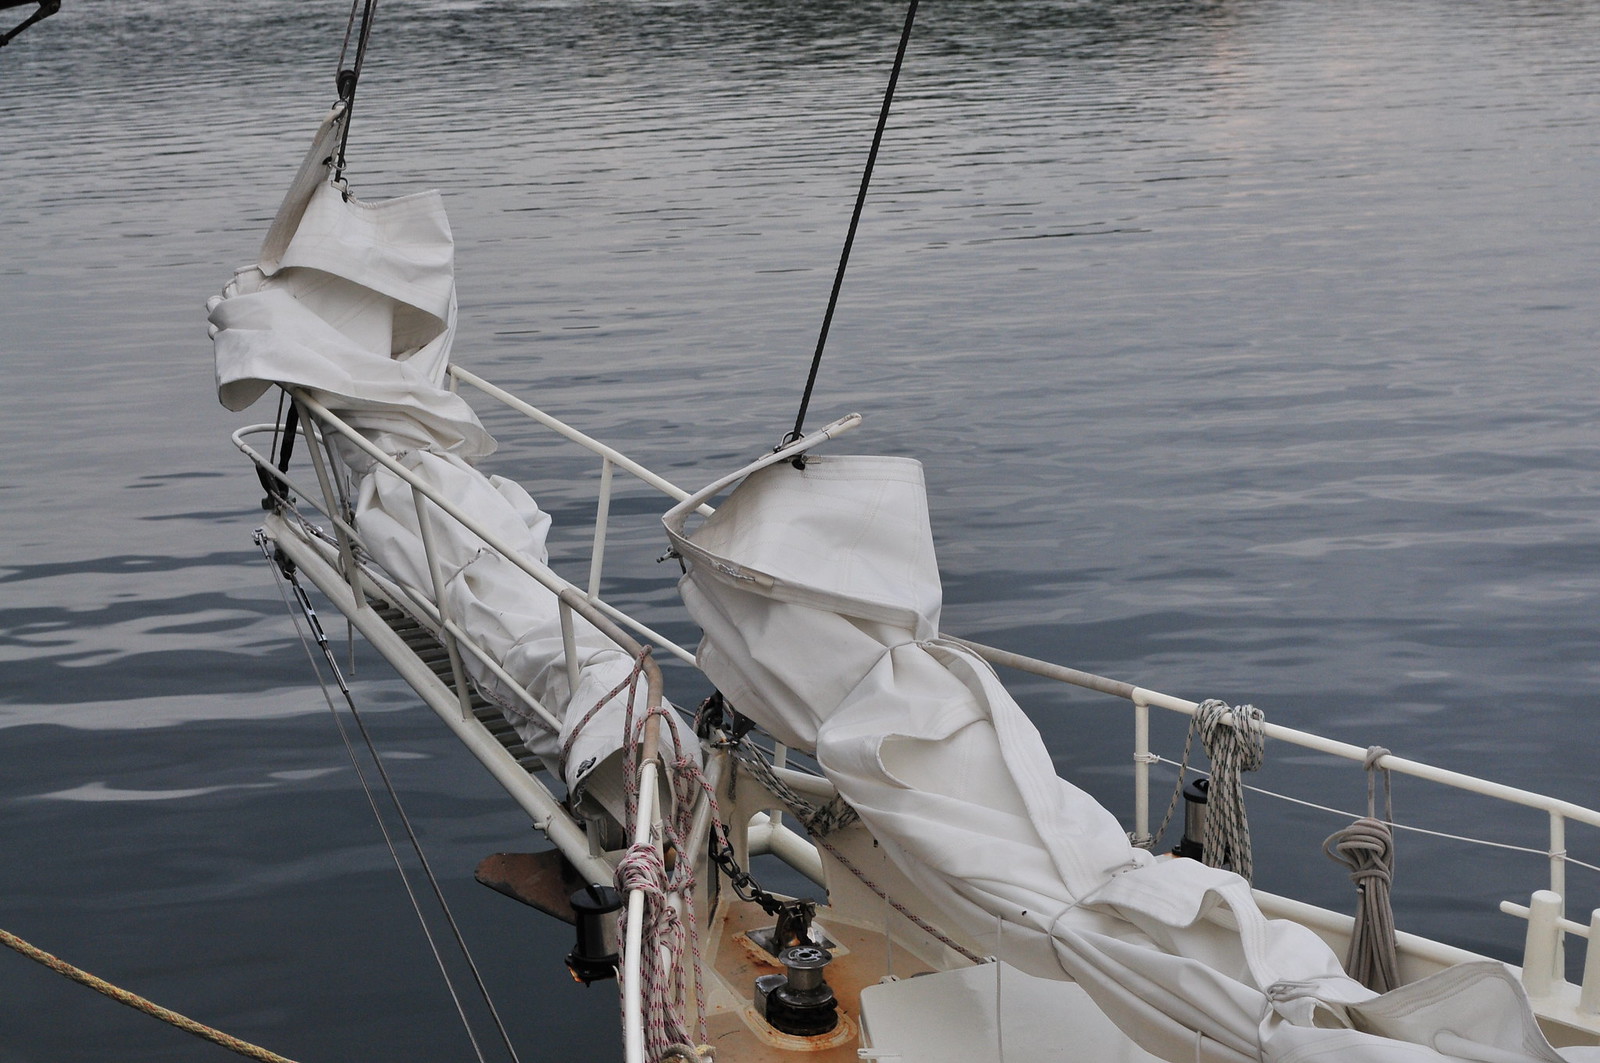 sails furled up, Oban